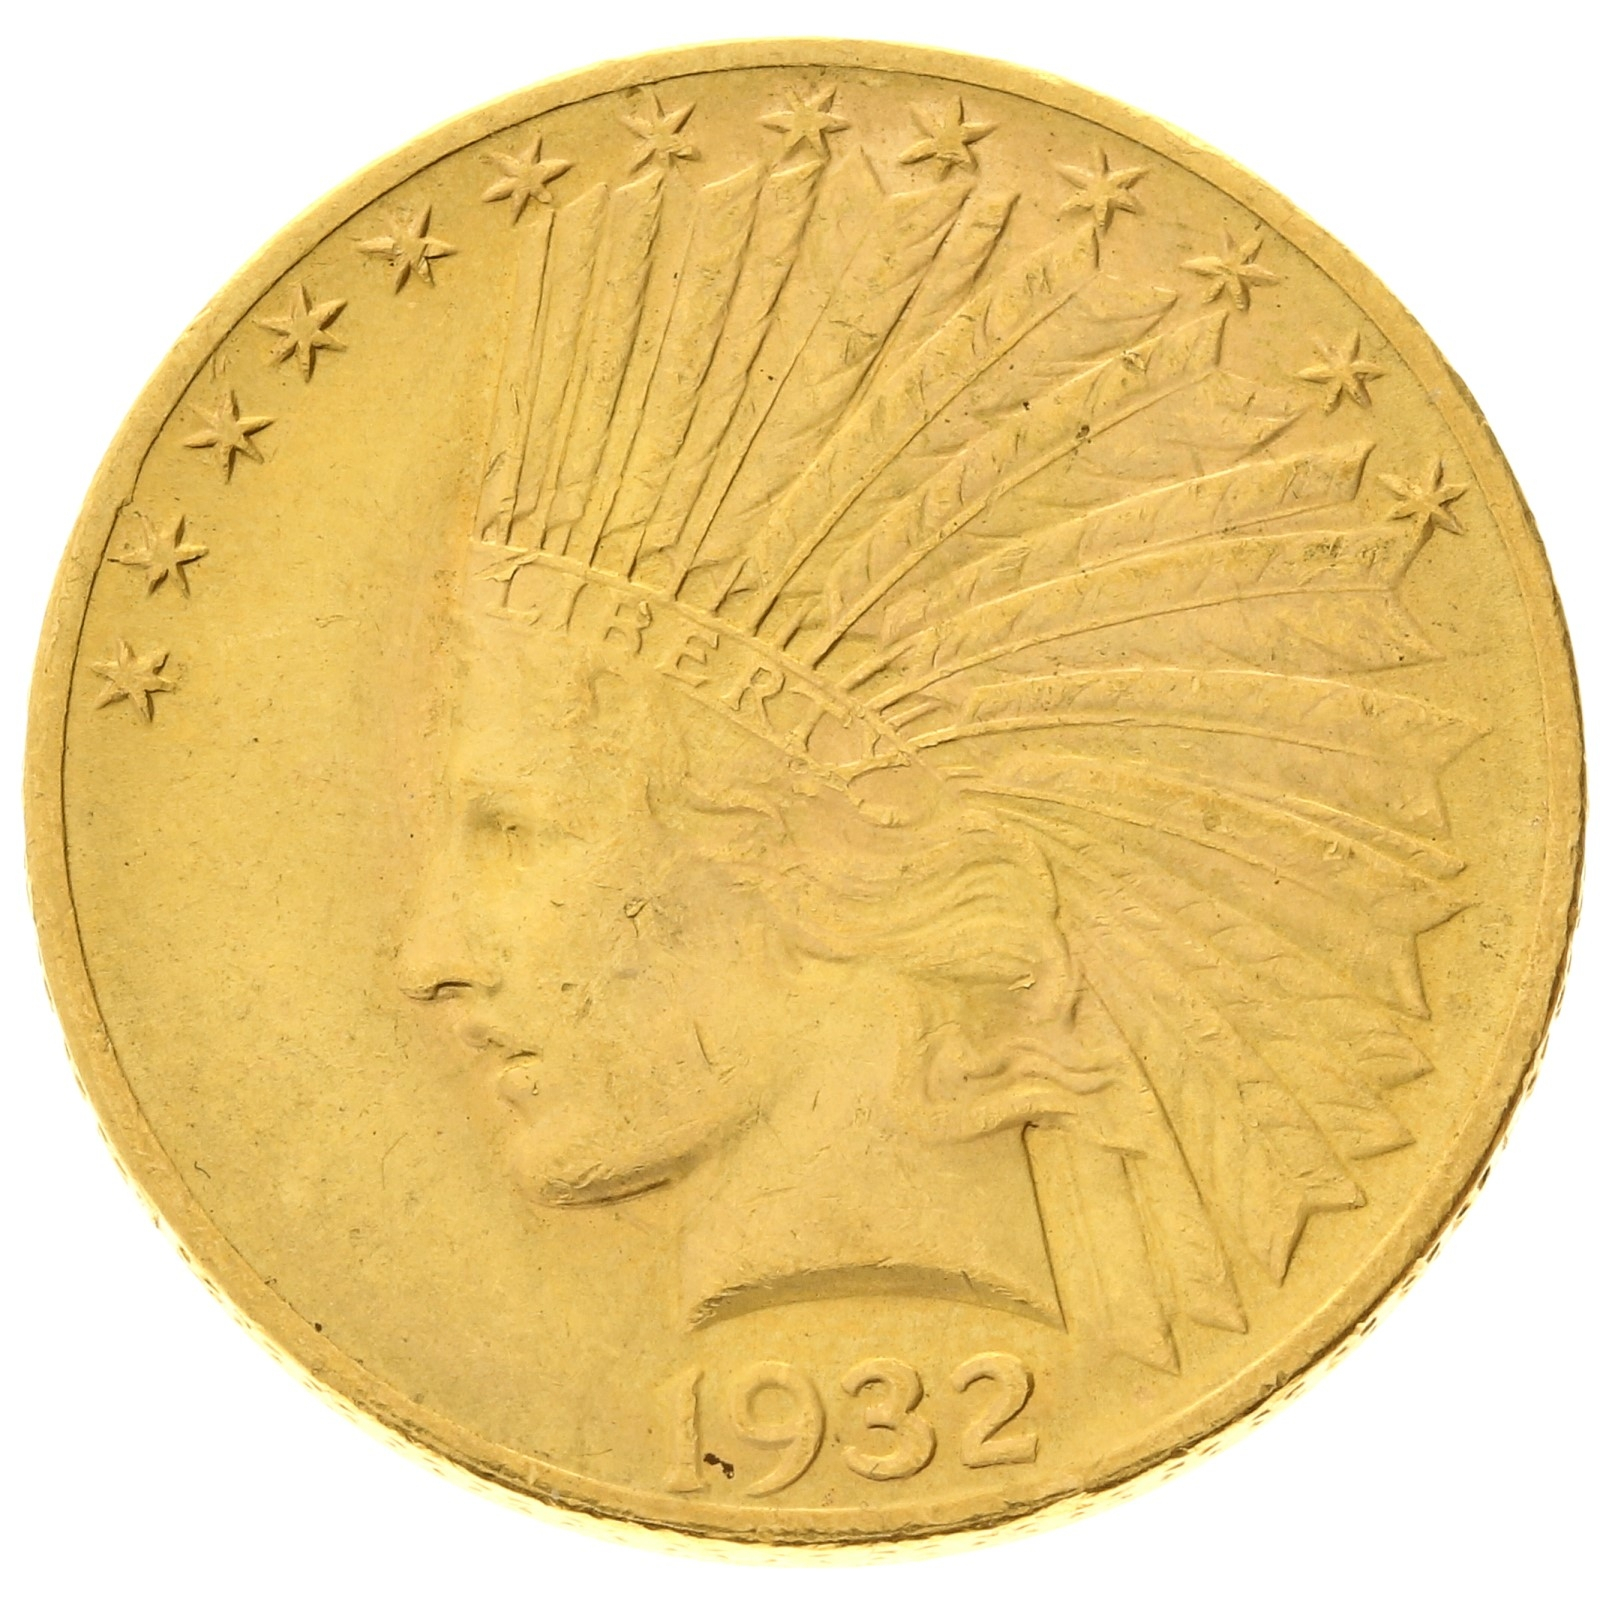 USA - 10 dollars - 1932 - Indian Head